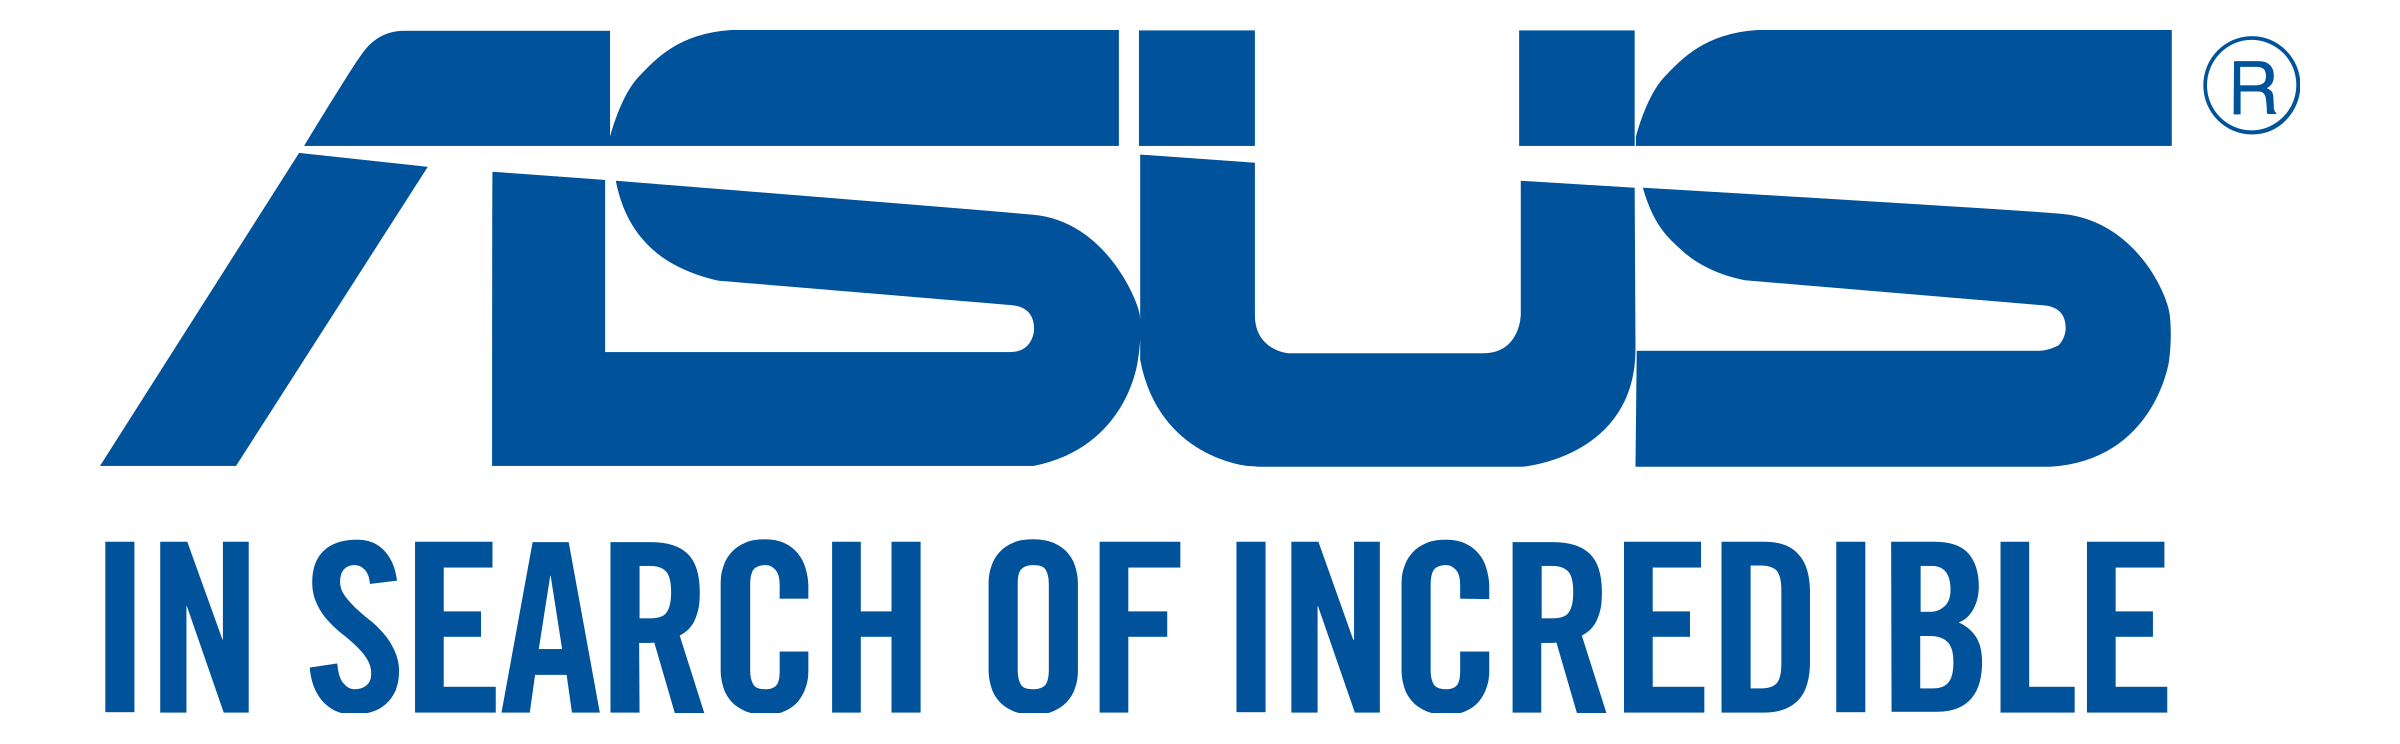 Asus Logo - Asus png logo 3 PNG Image